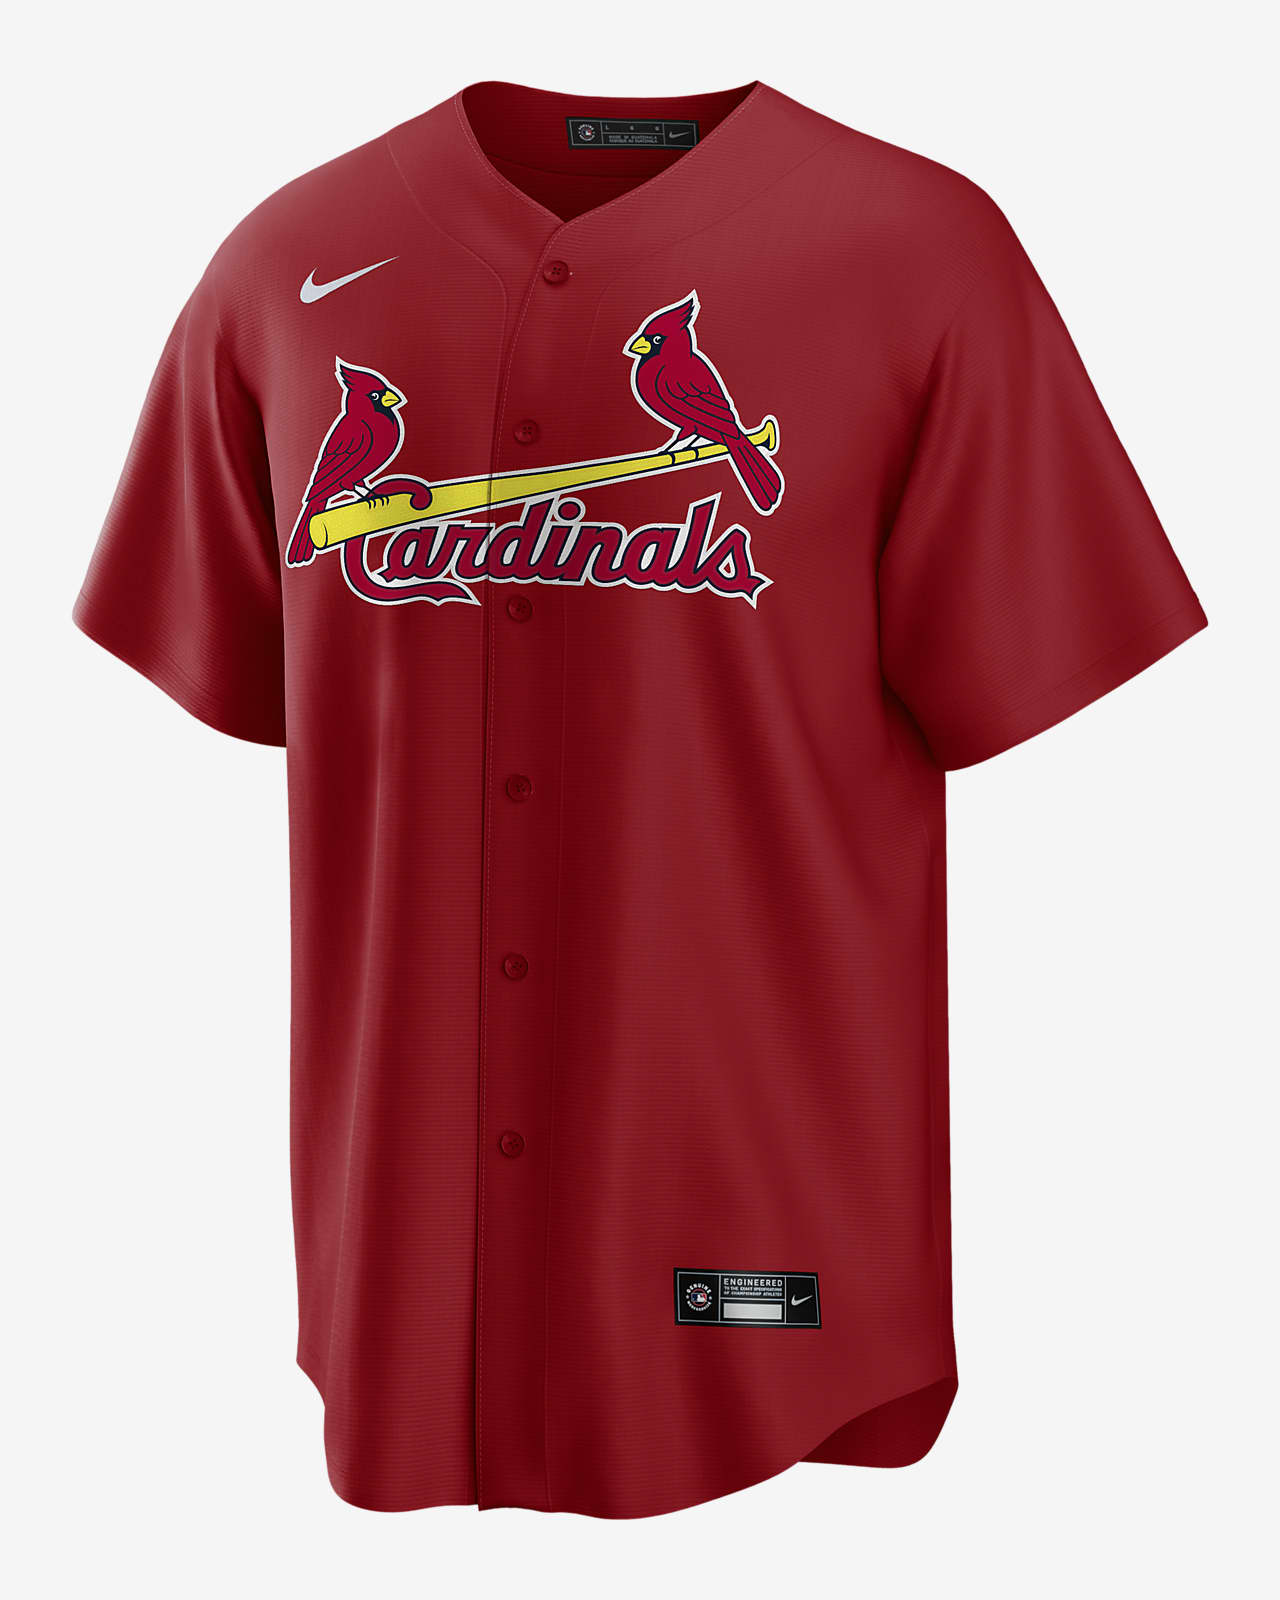 cardinals nike shirt